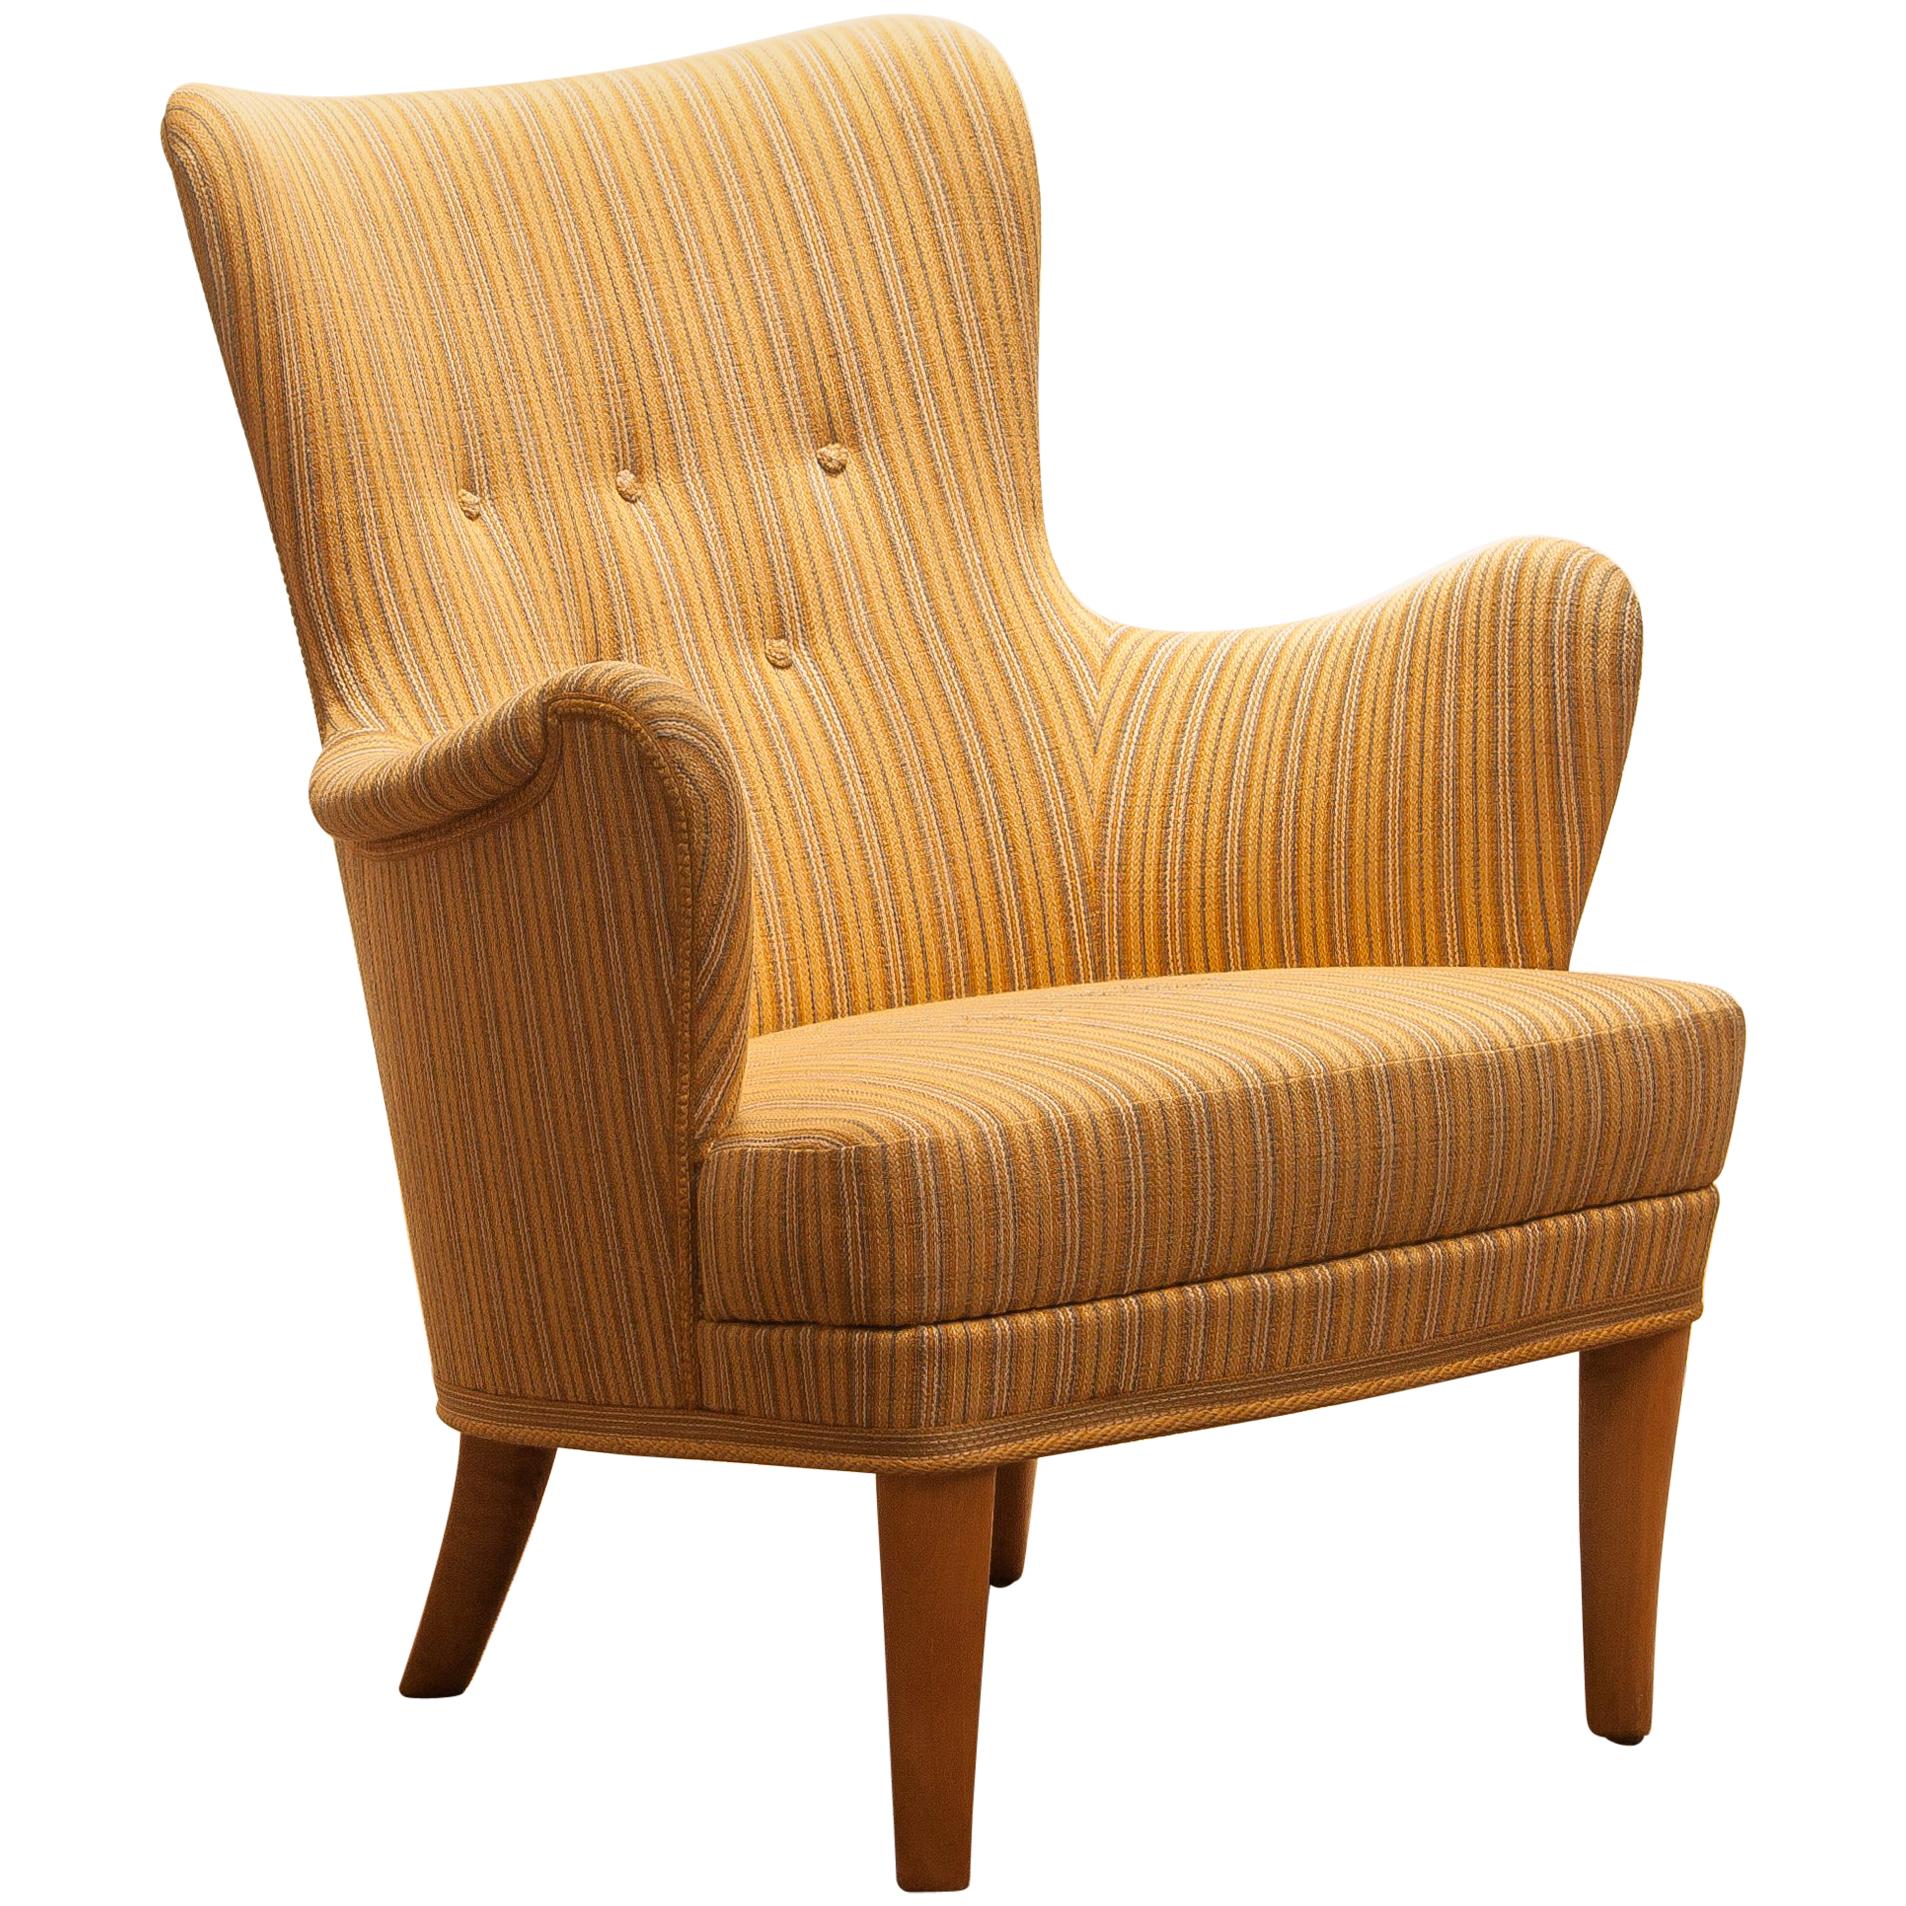 1950s, Easy Arm Lounge Chair "Gävle" by Carl Malmsten for OH Sjogren